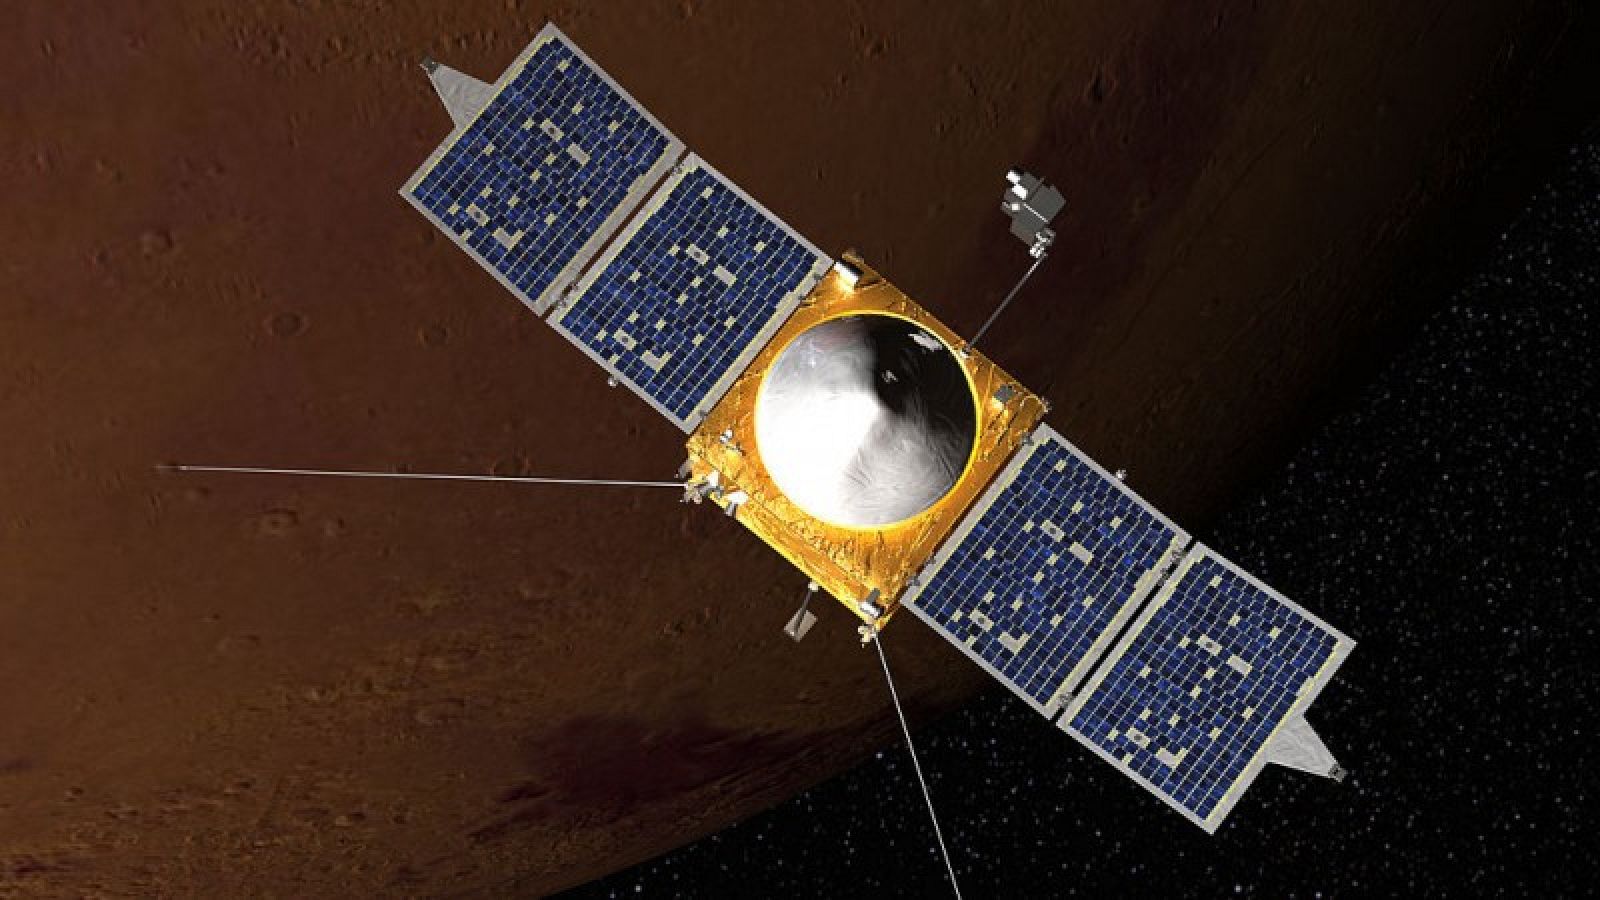 Impresión artística de la sonda MAVEN en órbita alrededor de Marte